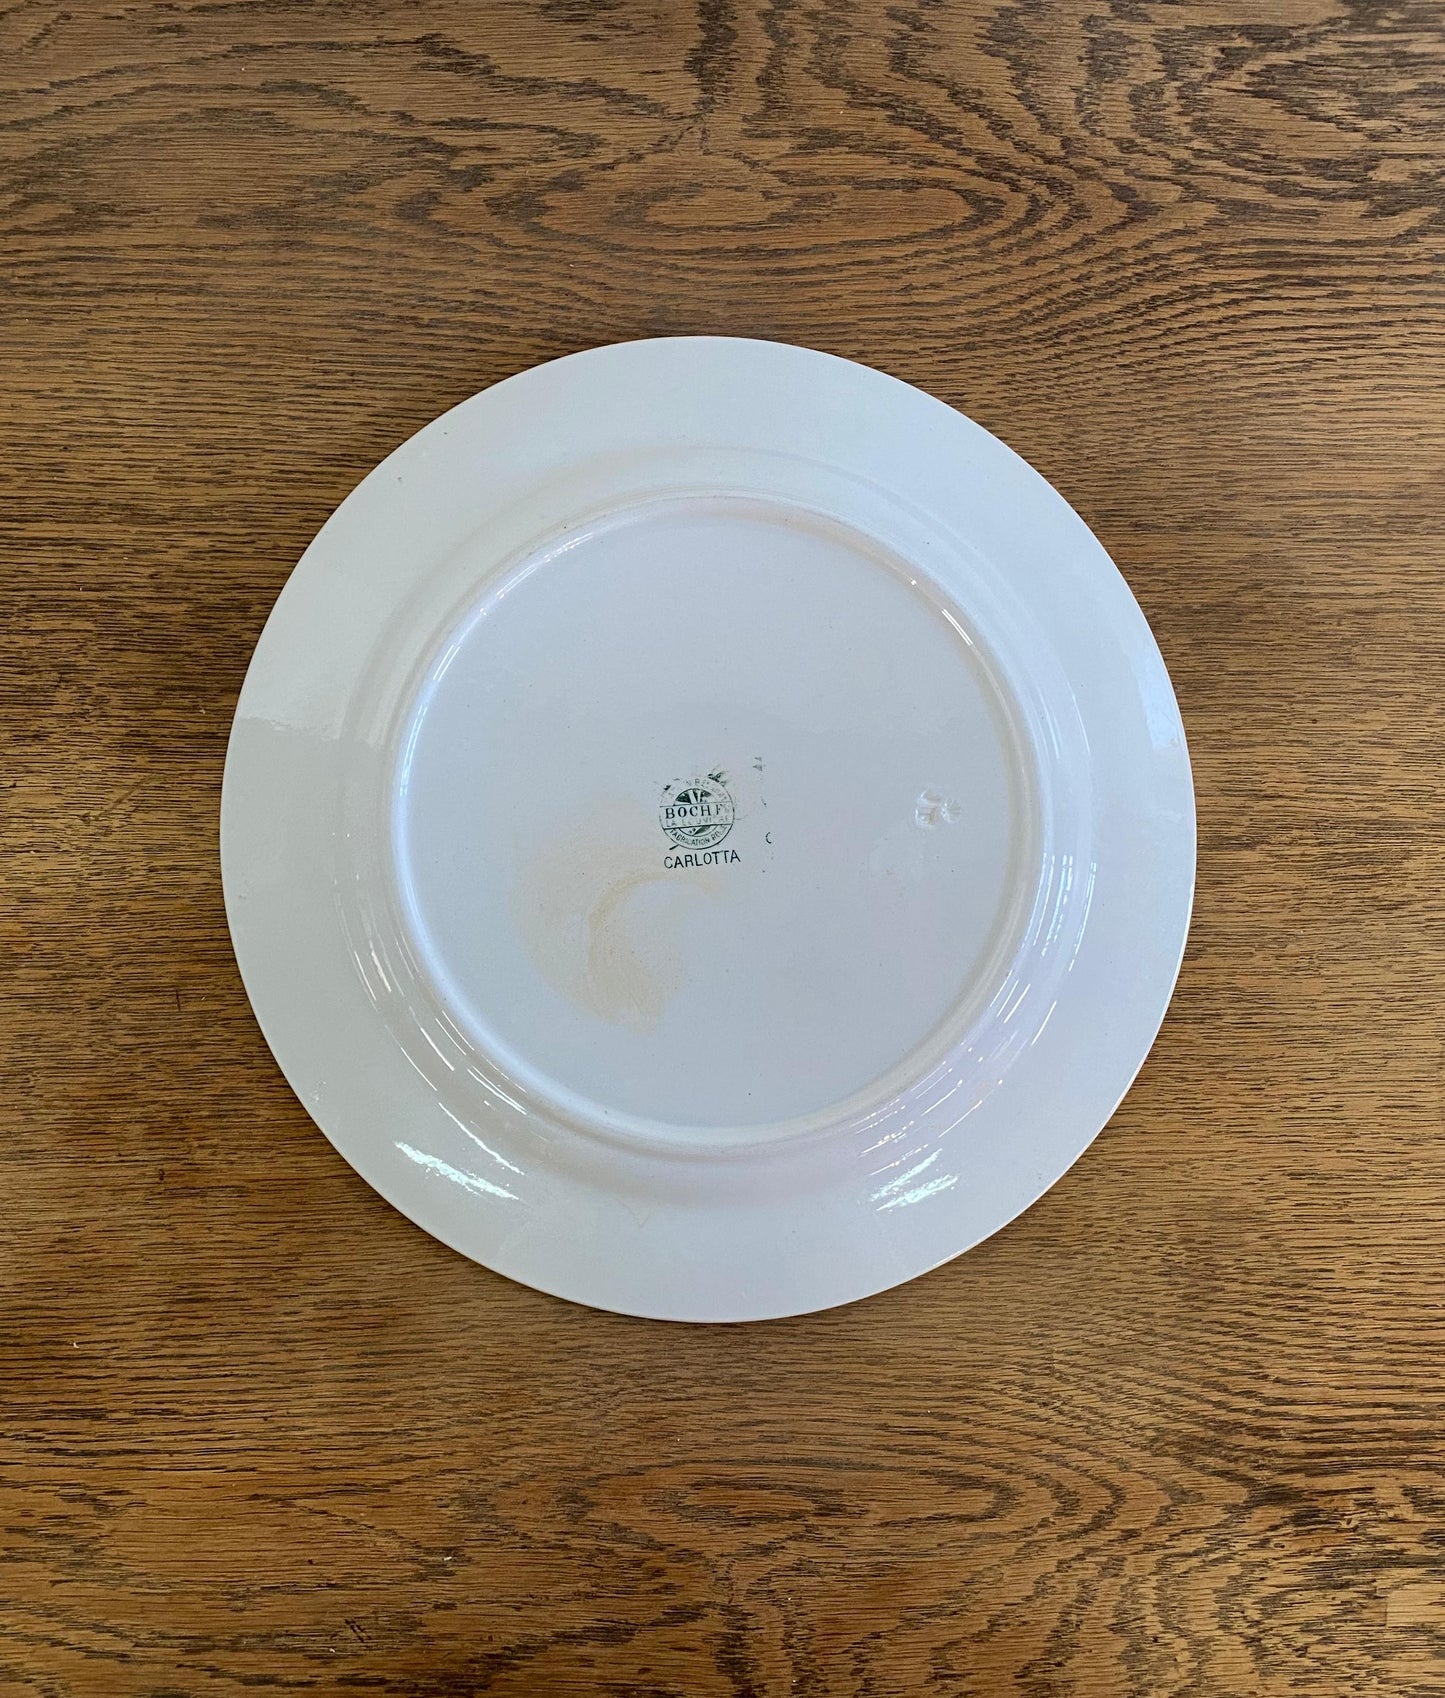 "BOCH"  CARLOTTA Plate(XL)